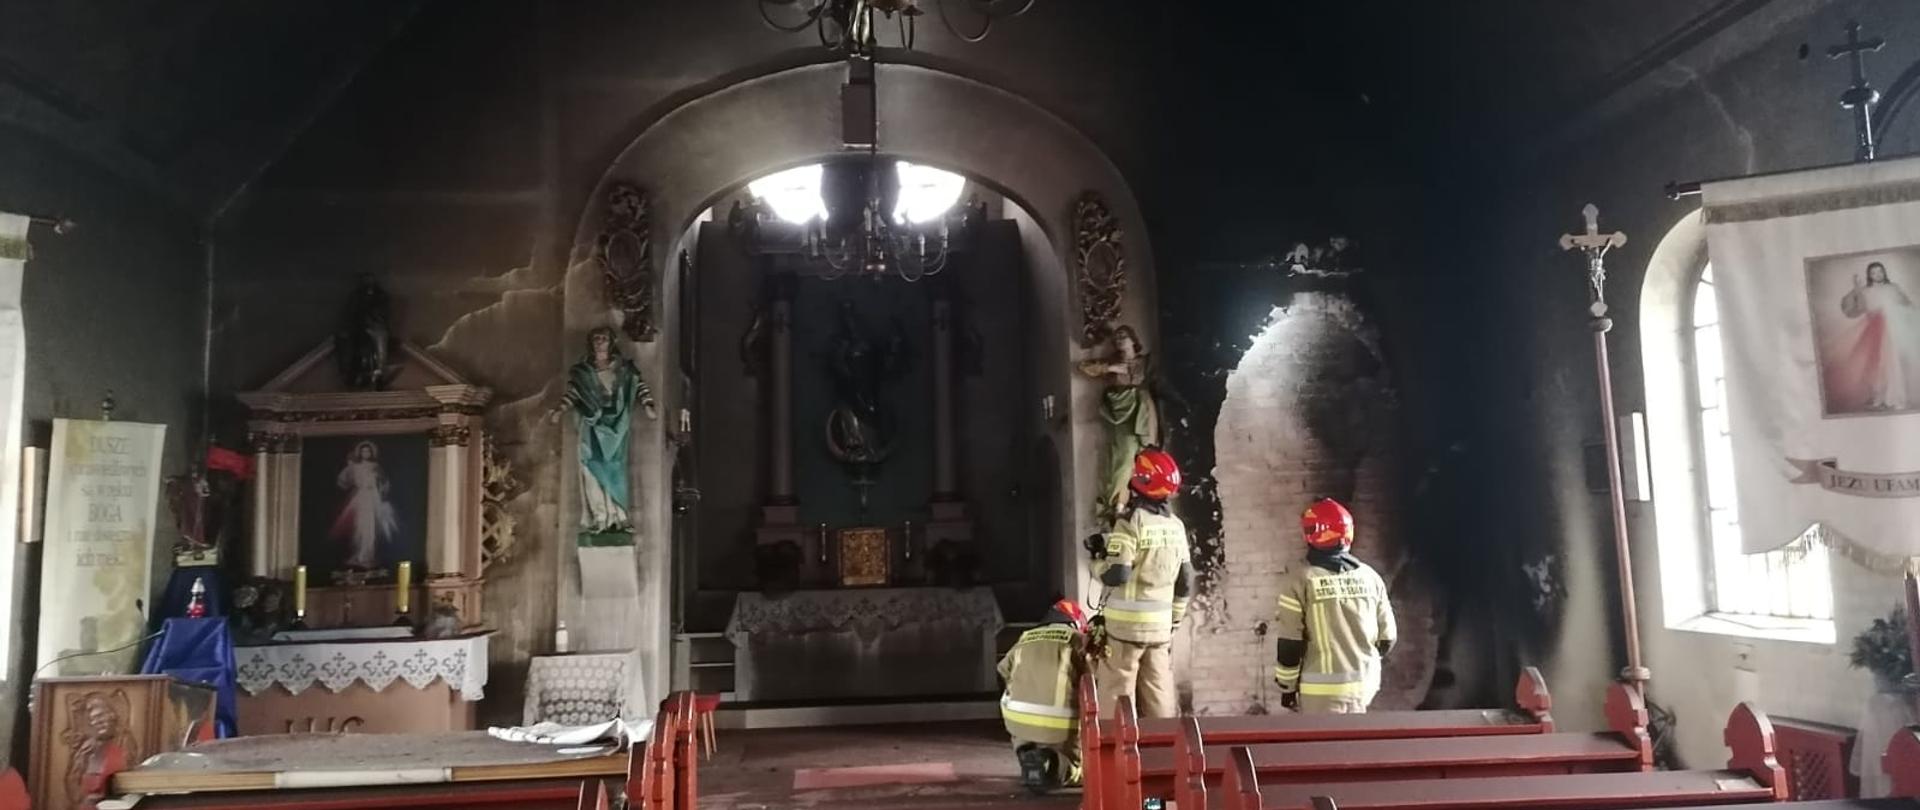 Wnętrze kościoła po pożarze. Czarne ściany i sufit świątyni. Wewnątrz trzech strażaków w jasnych mundurach i czerwonych hełmach.